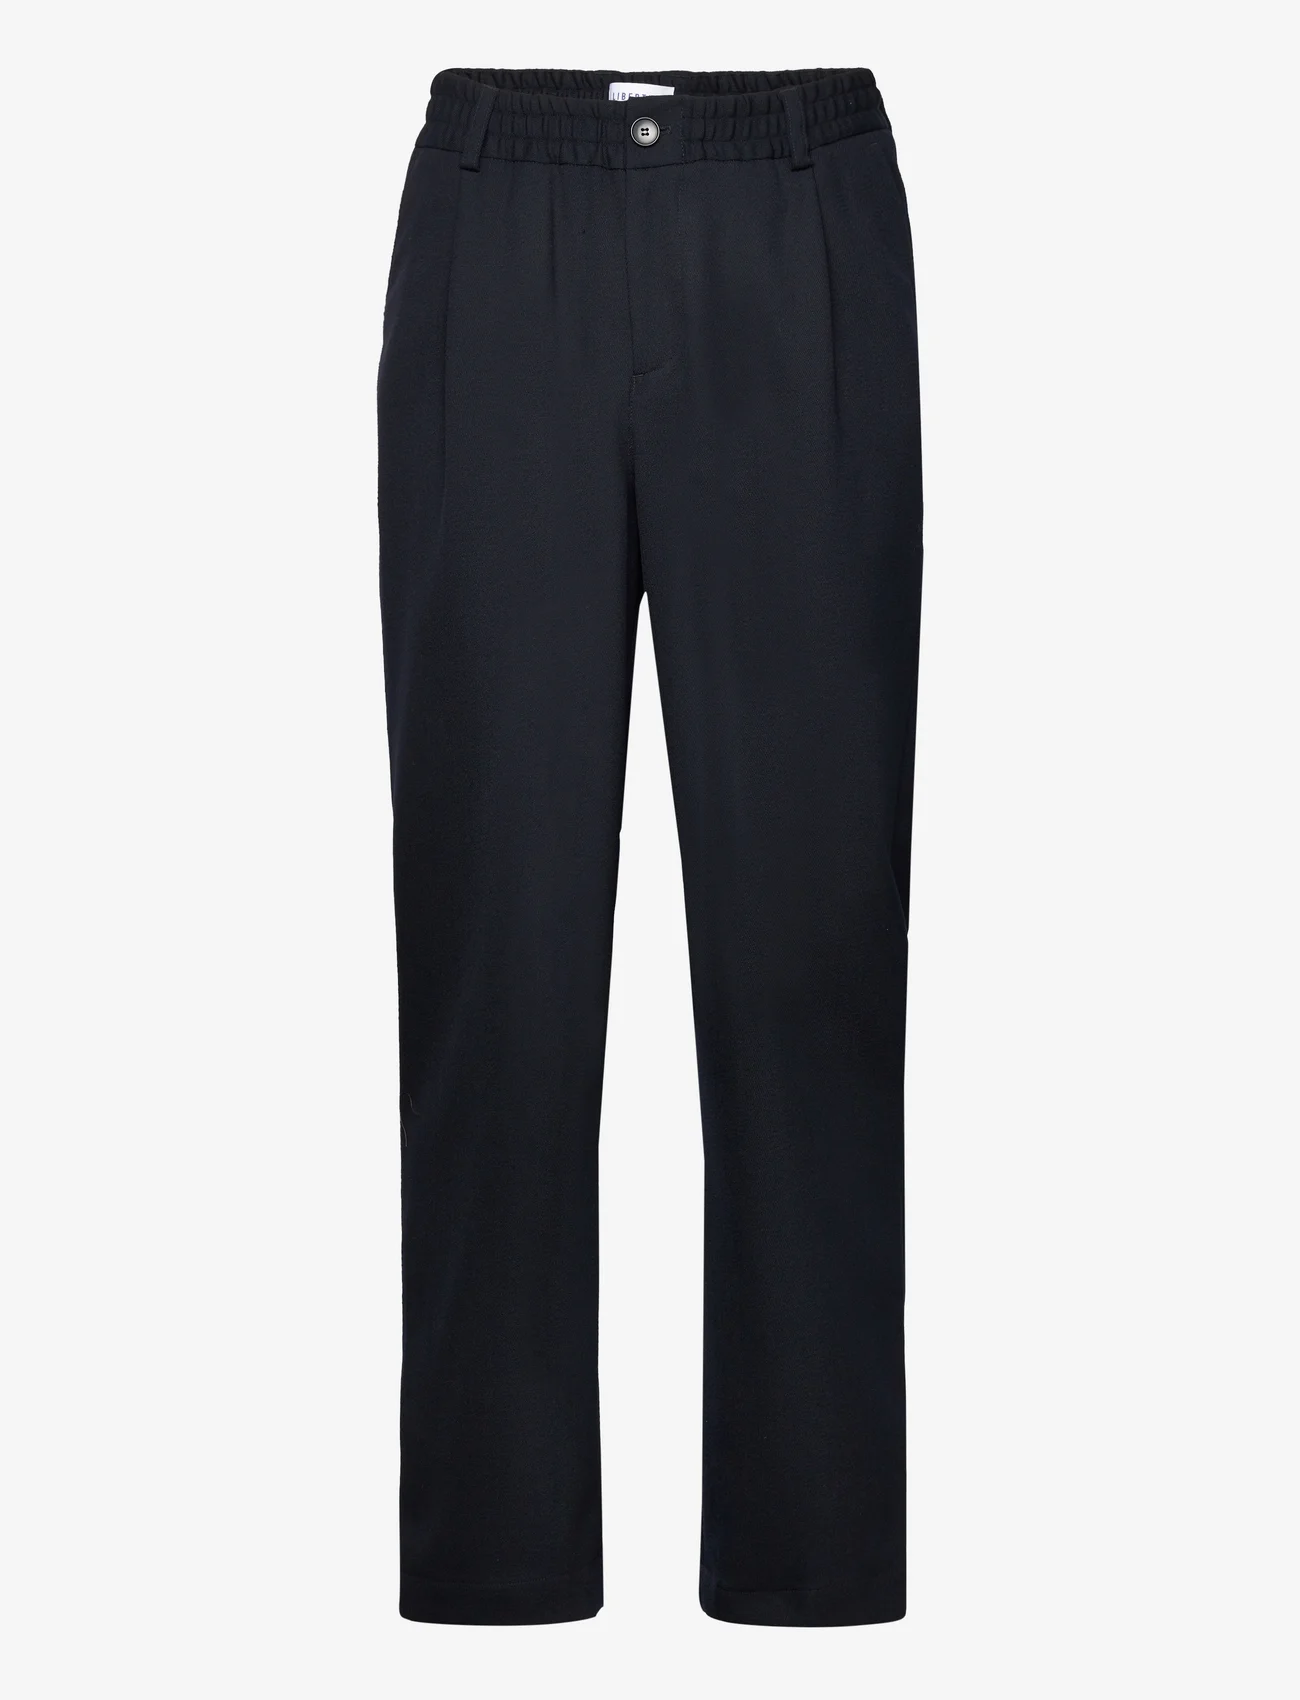 Libertine-Libertine - Agency - suit trousers - dark navy - 0